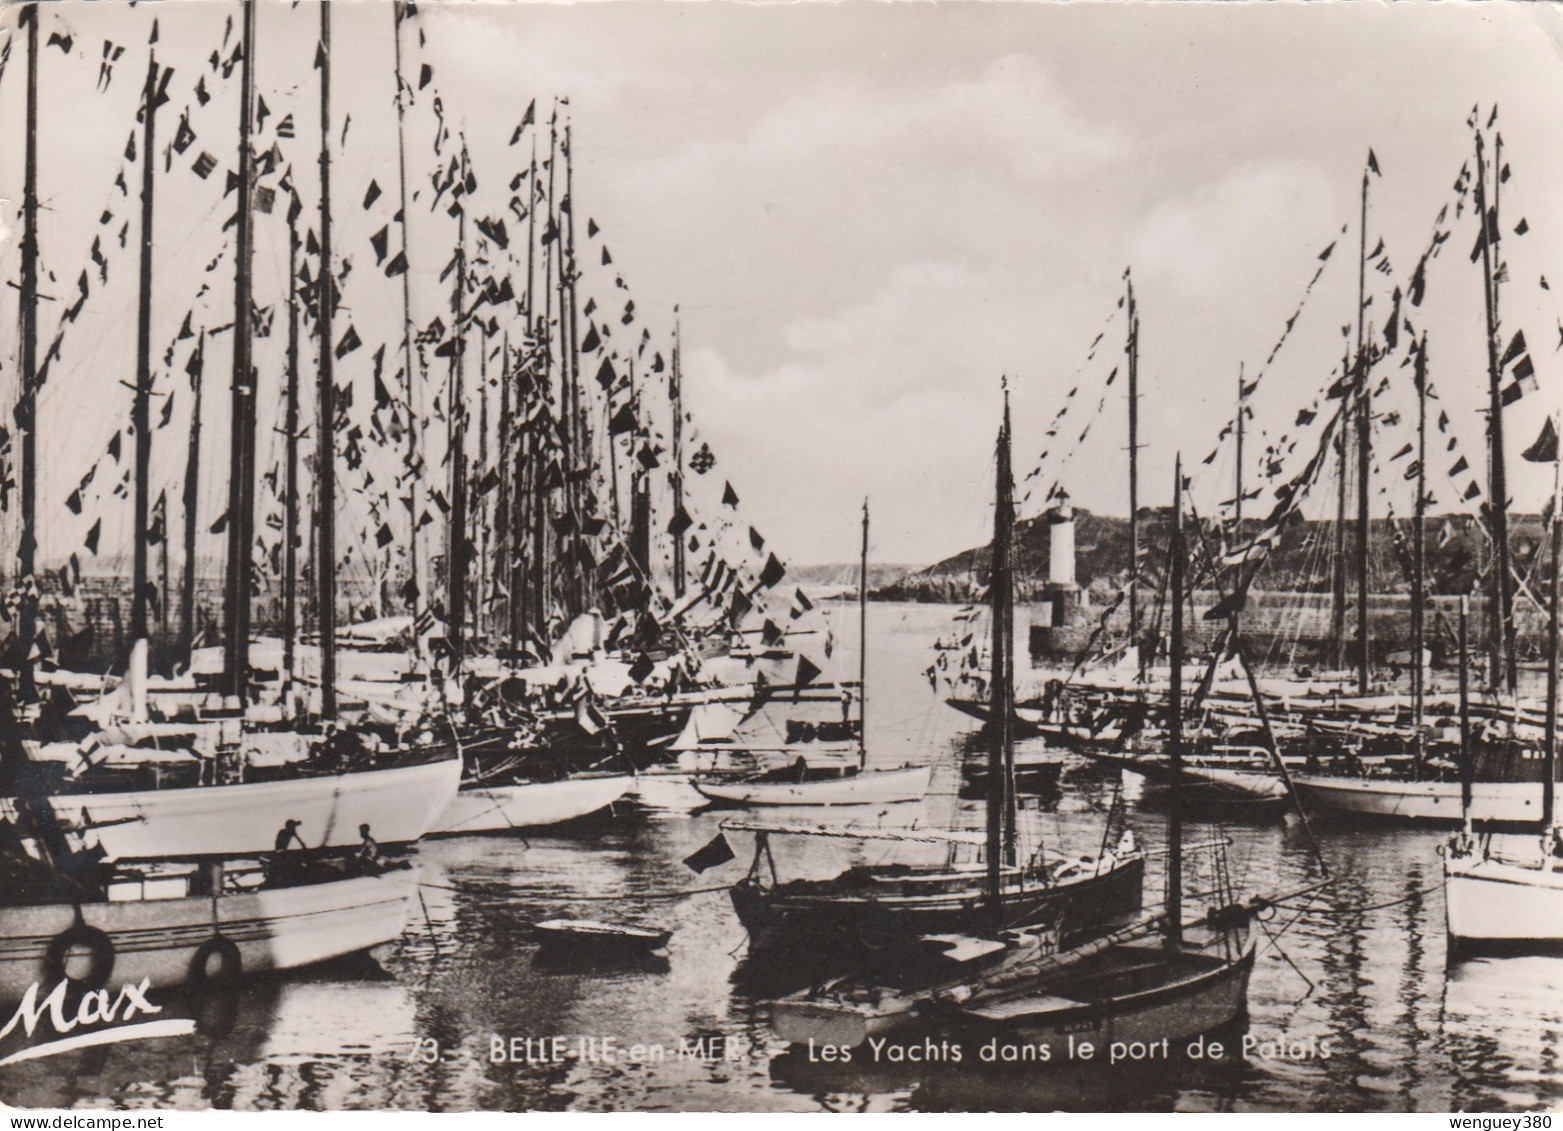 56 BELLE-ILE-en-MER     Les Yachts Dans Le Port De Palais      SUP  PLAN 1956          RARE - Belle Ile En Mer